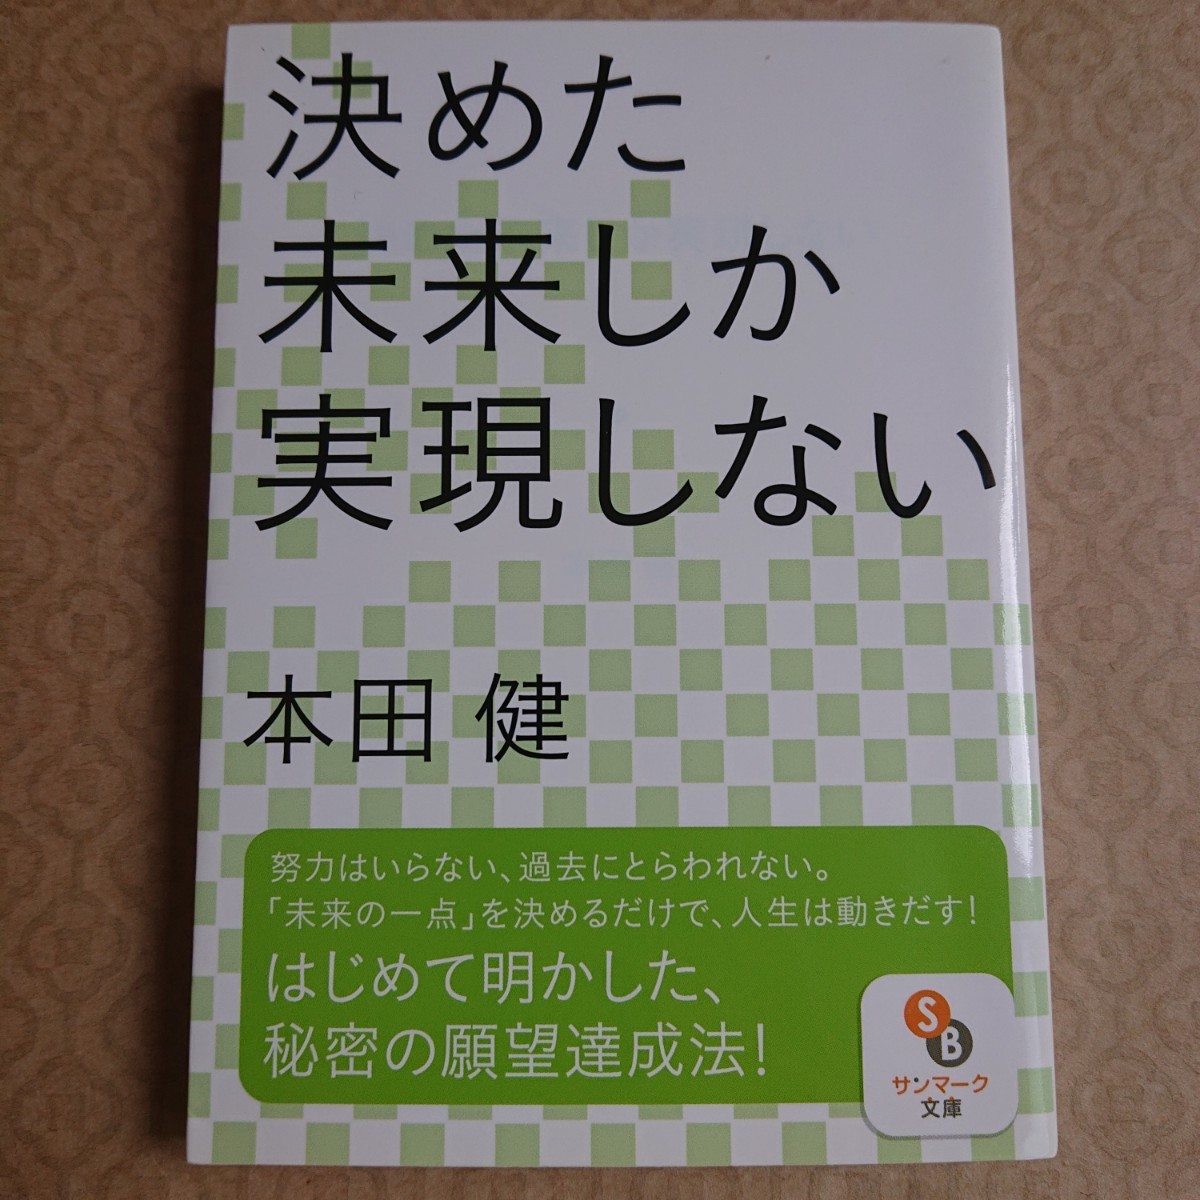 人気作家本田健さんの書籍を5冊まとめて